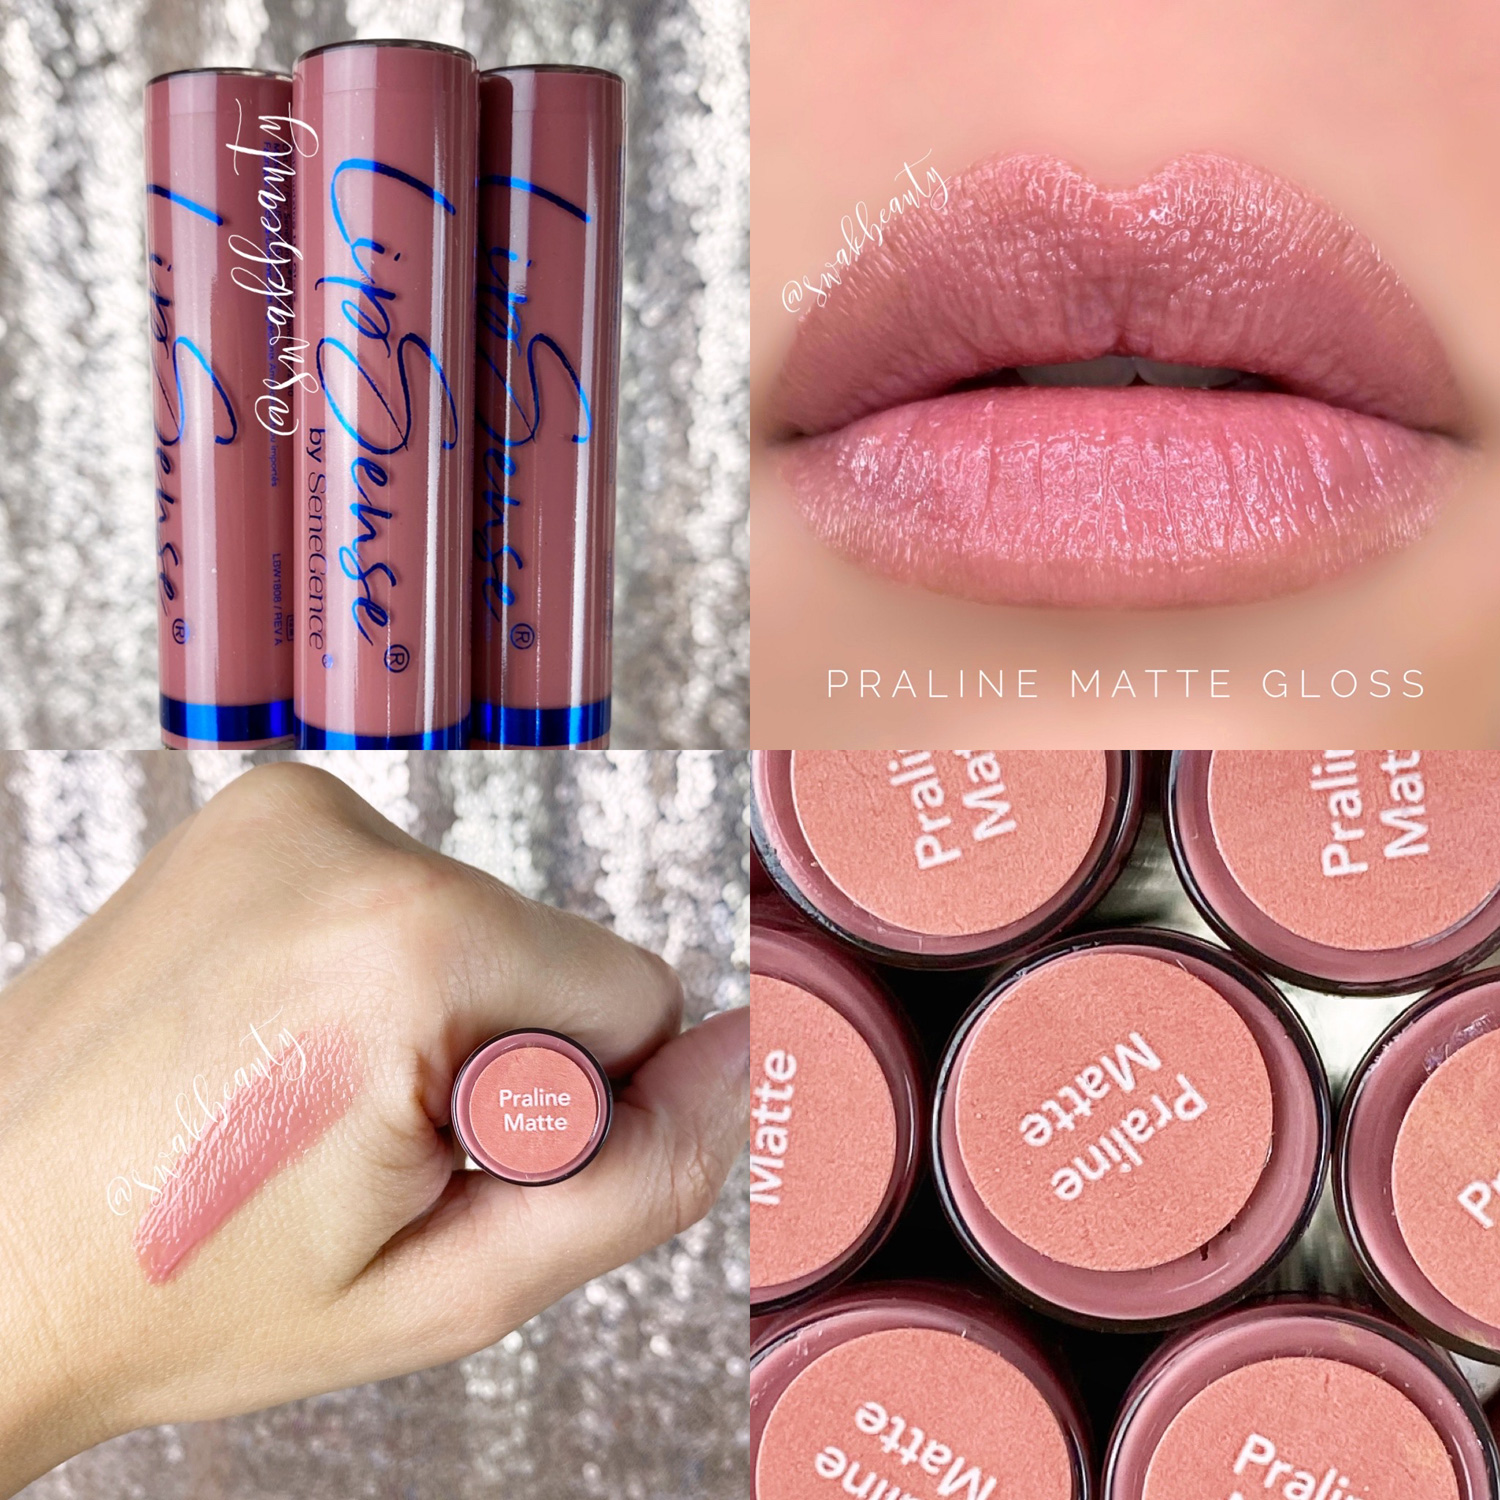 LipSense ® Praline Matte Gloss (Limited Edition) - swakbeauty.com.